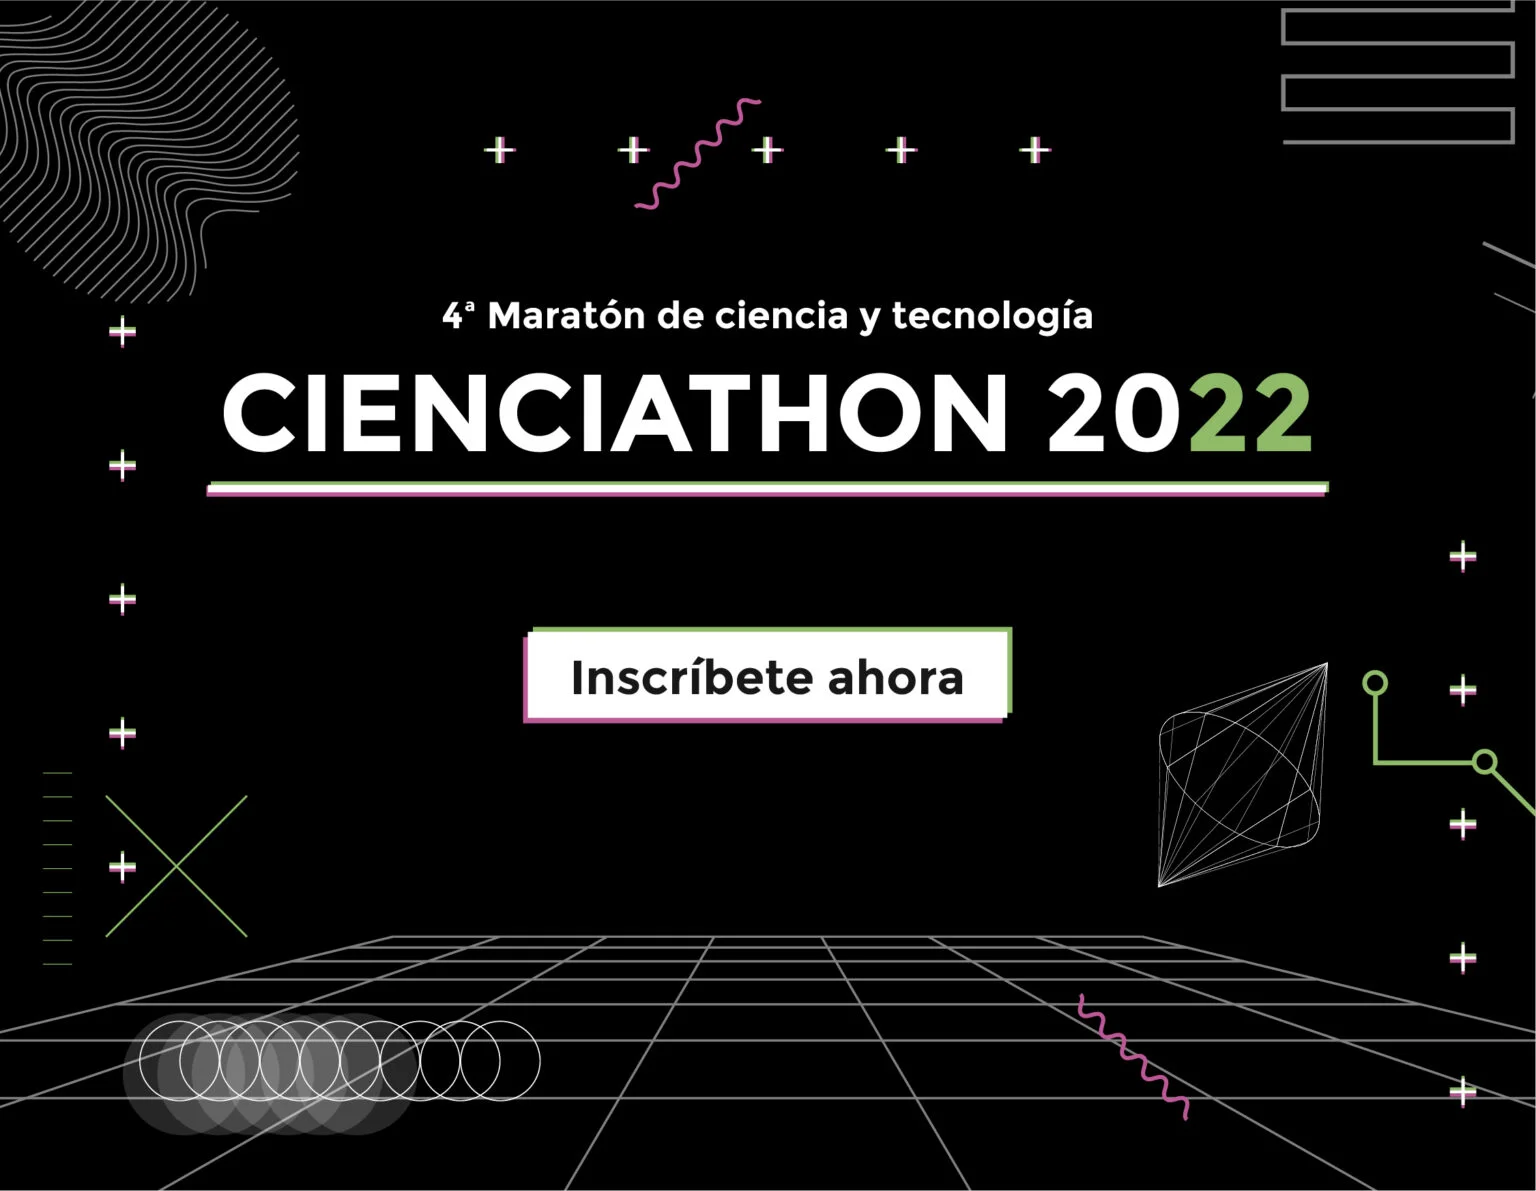 Evento Cienciathon de MultitecUA y Parque Científico de la Universidad de Alicante